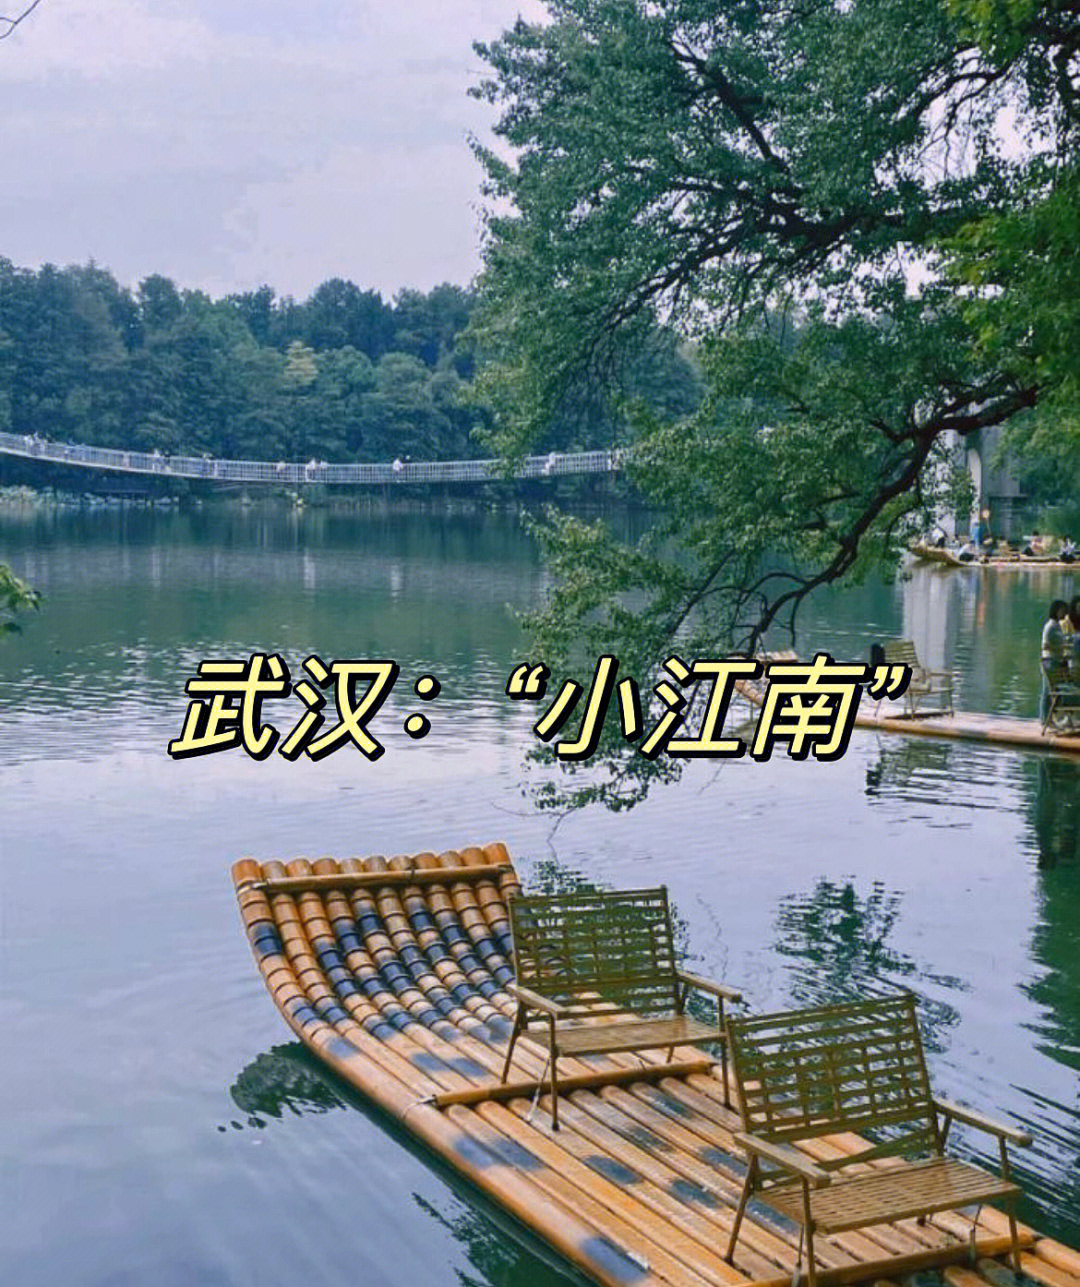 湖北旅游年卡可直接刷卡入园哦落雁岛位于武汉东湖风景区磨山景区旁